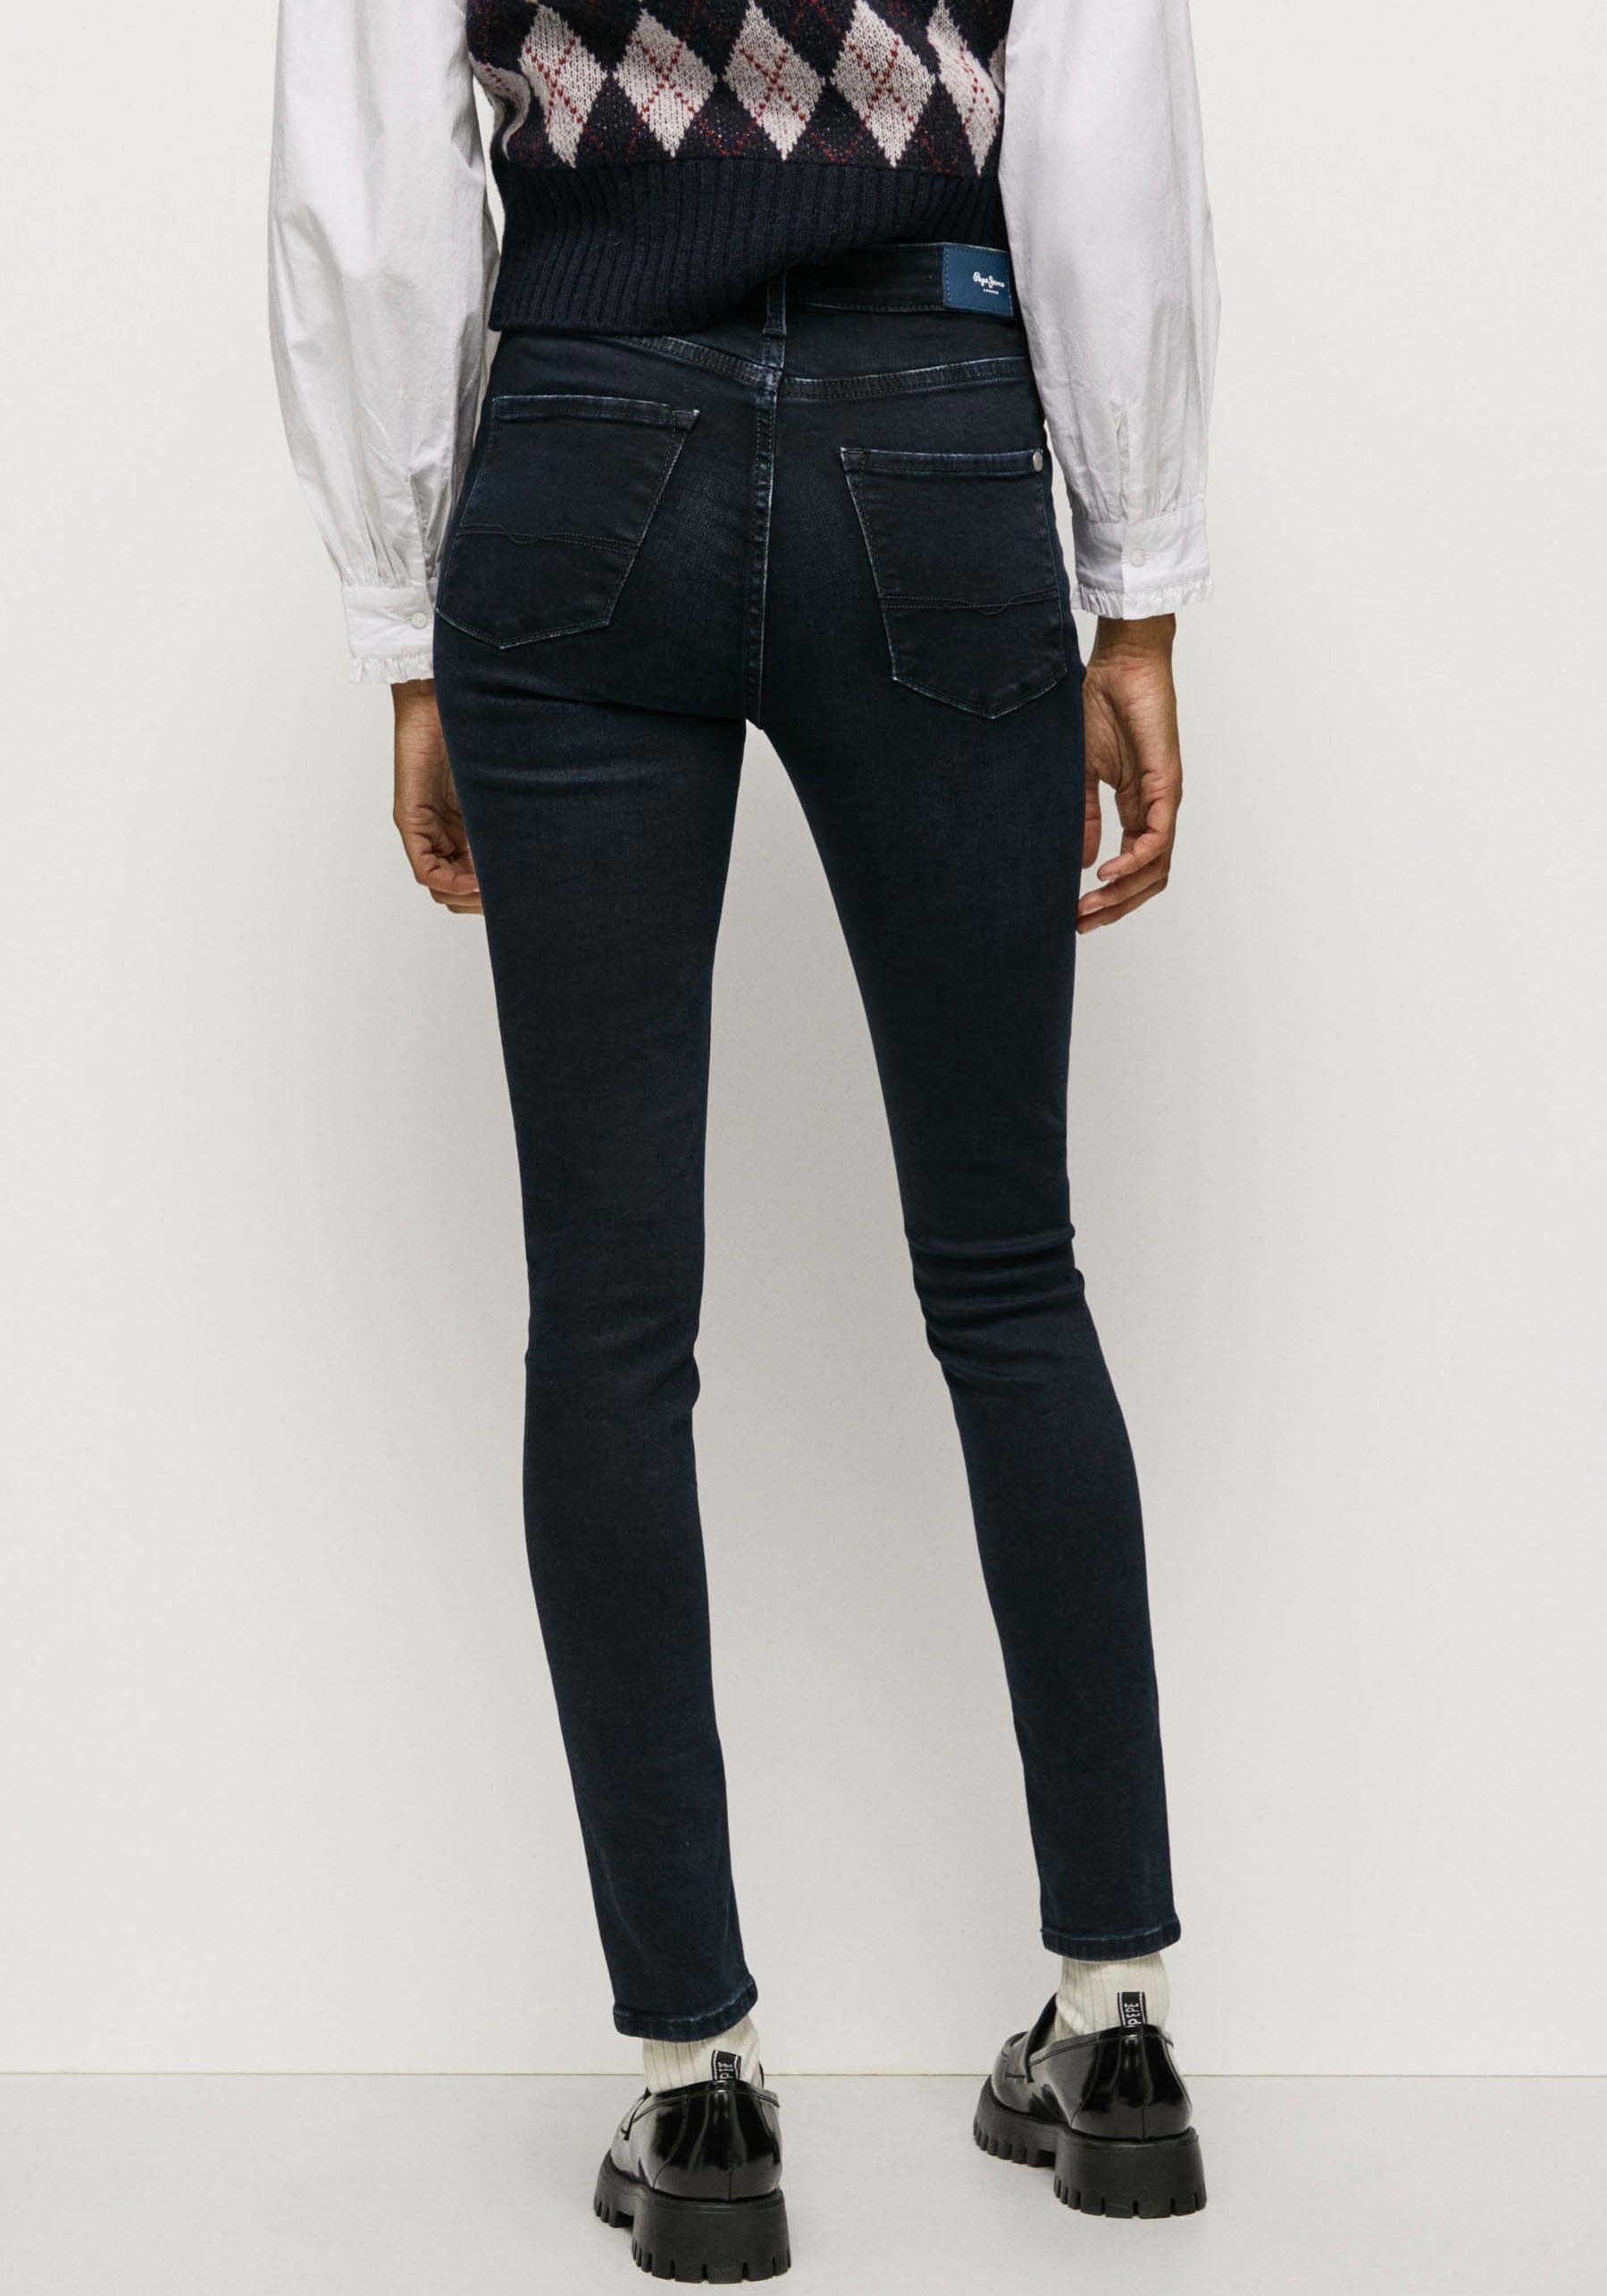 Pepe Jeans Röhrenjeans »REGENT«, in Skinny Passform mit hohem Bund aus  seidig bequemem Stretch Denim kaufen | I\'m walking